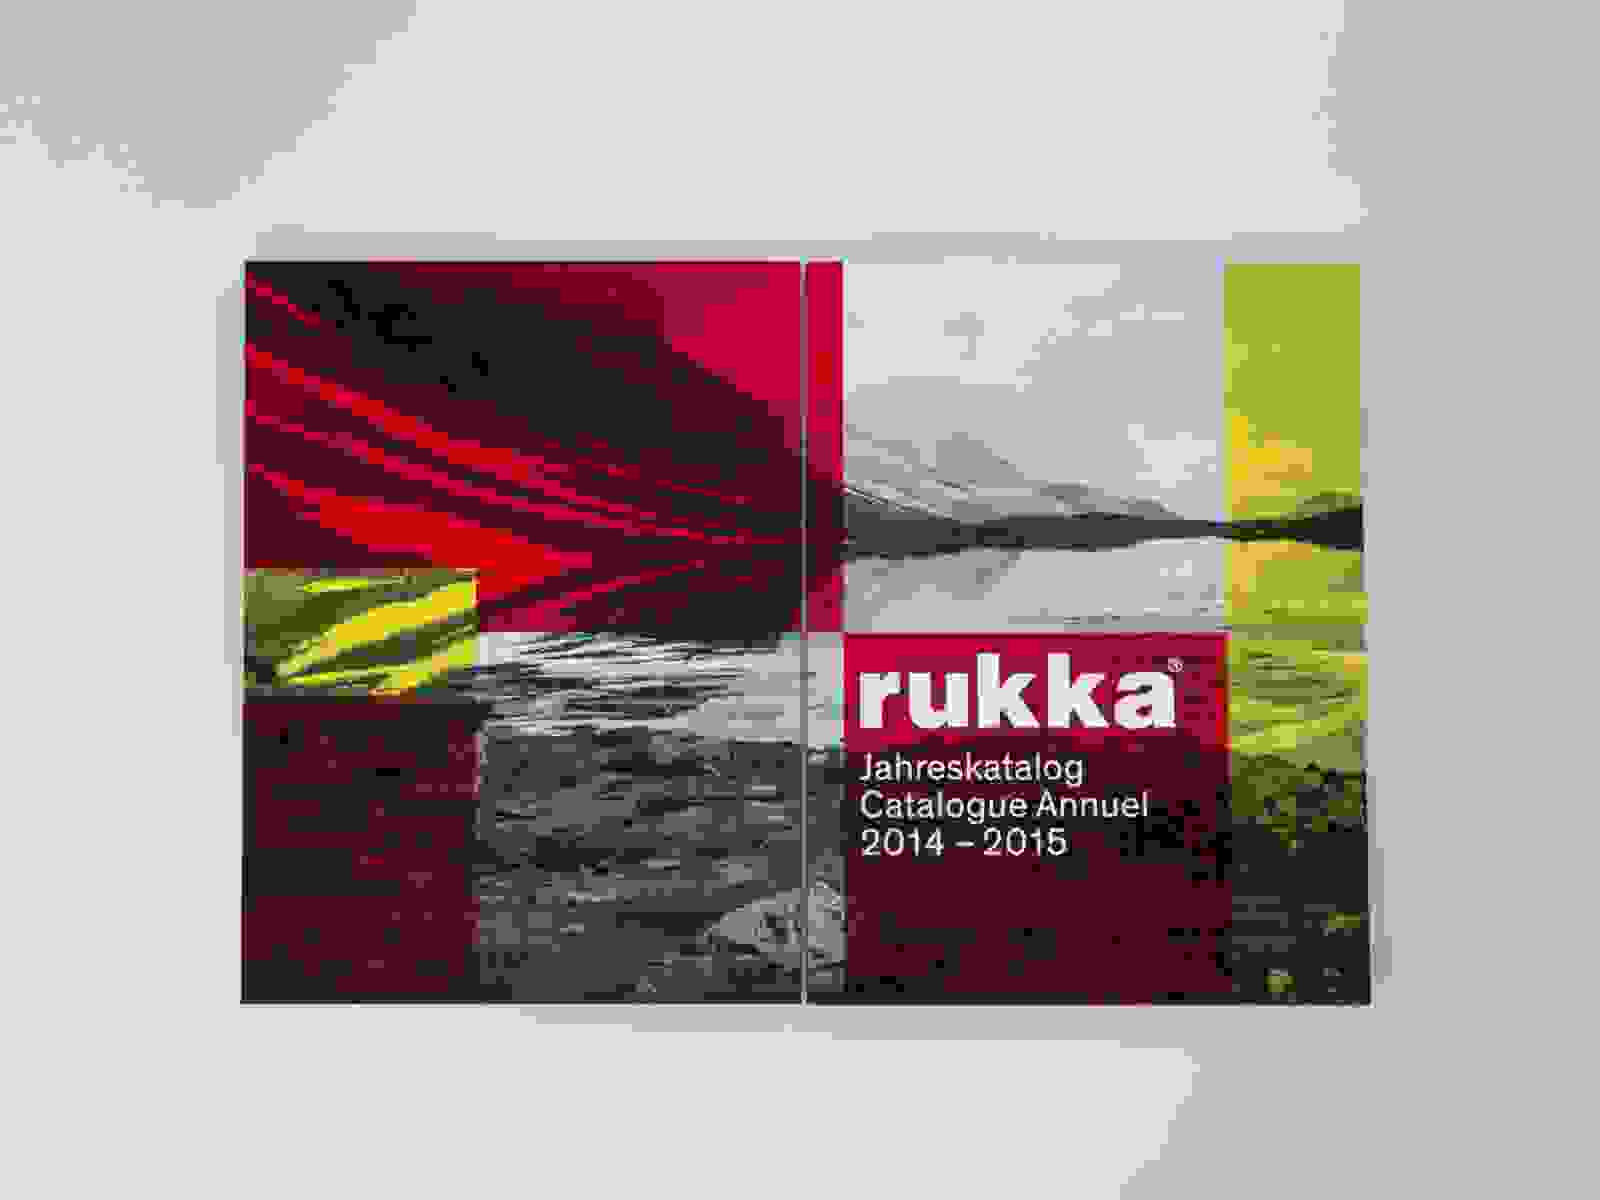 Neuheiten und Jahreskatalog 2014/15 von rukka